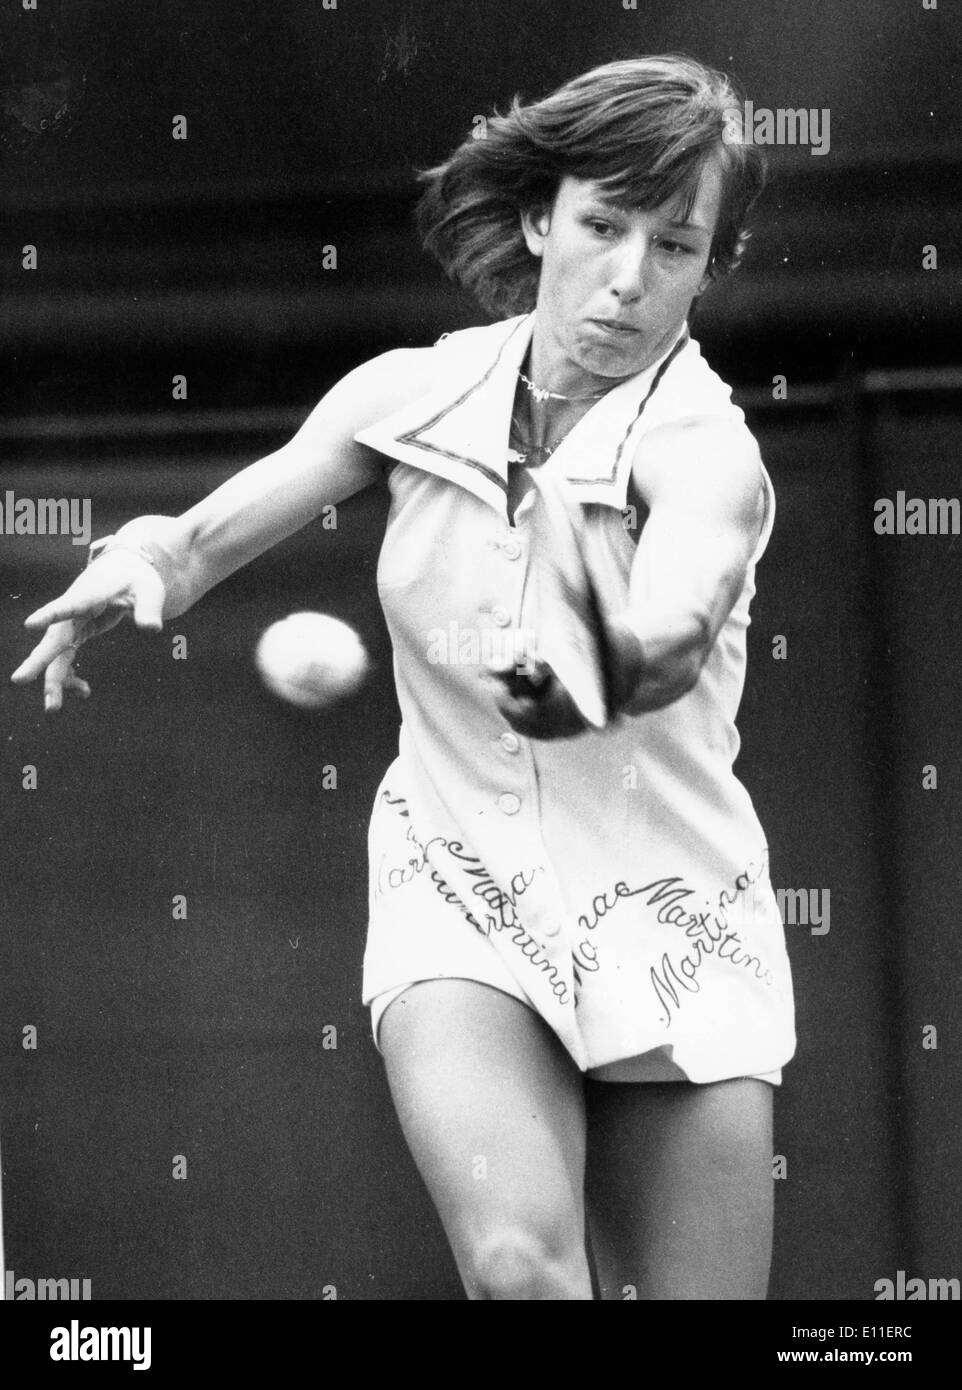 Martina Navratilova competes at Wimbledon Stock Photo